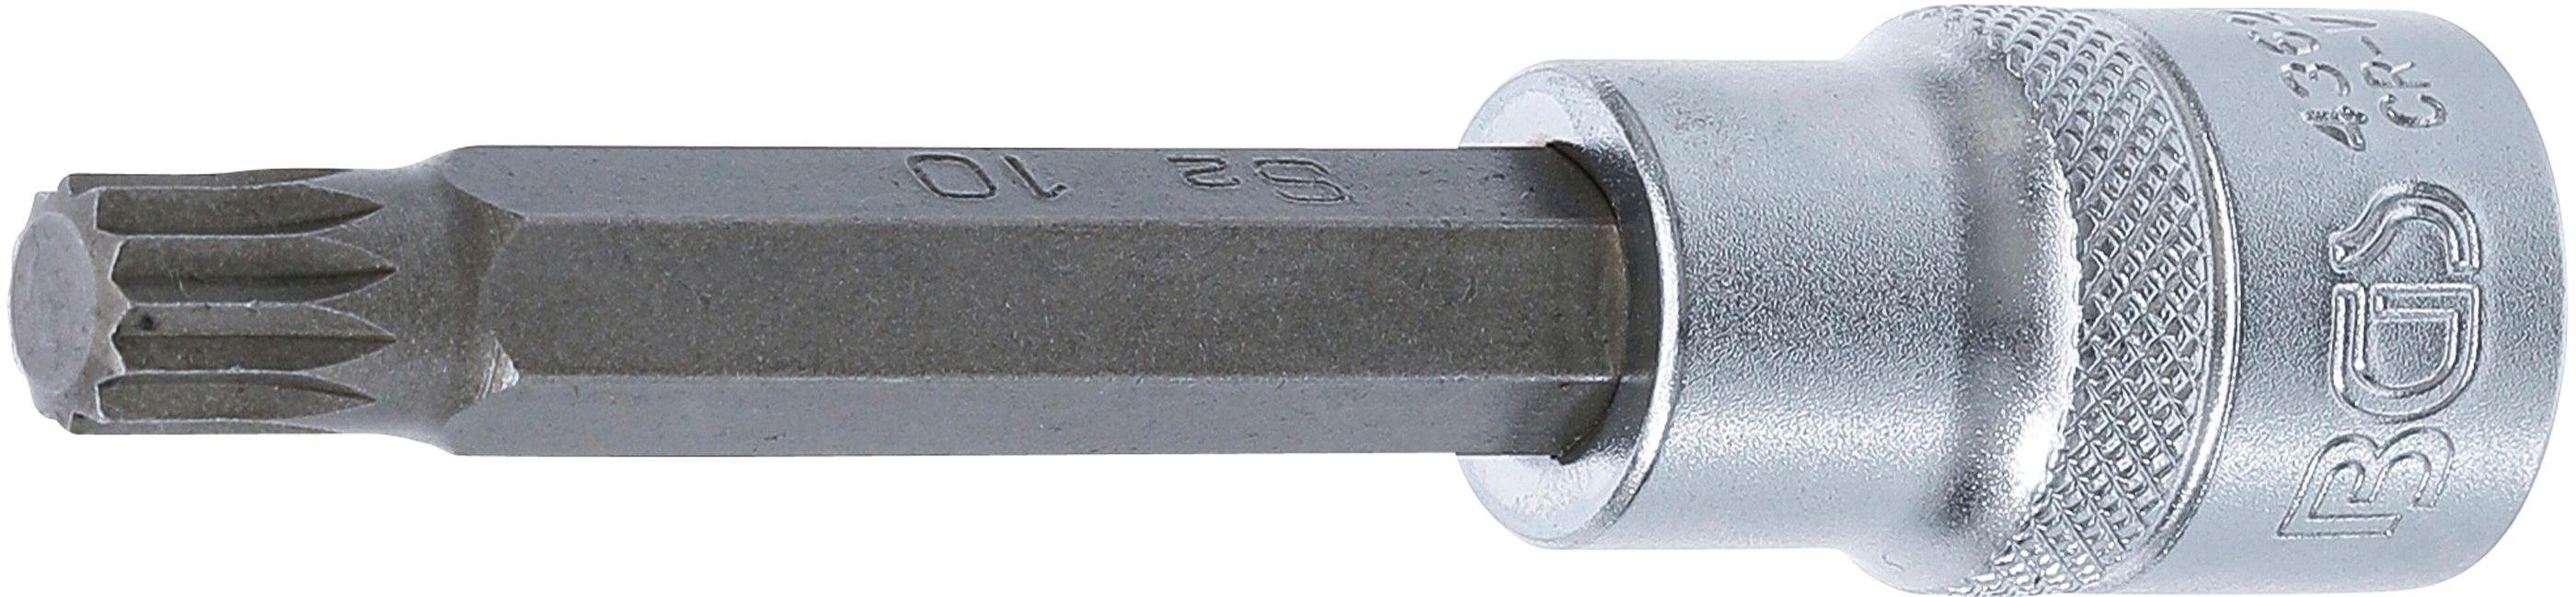 12,5 technic mm, Bit-Schraubendreher (für Innenvielzahn Bit-Einsatz, (1/2), Innenvierkant M10 Länge XZN) Antrieb BGS mm 100